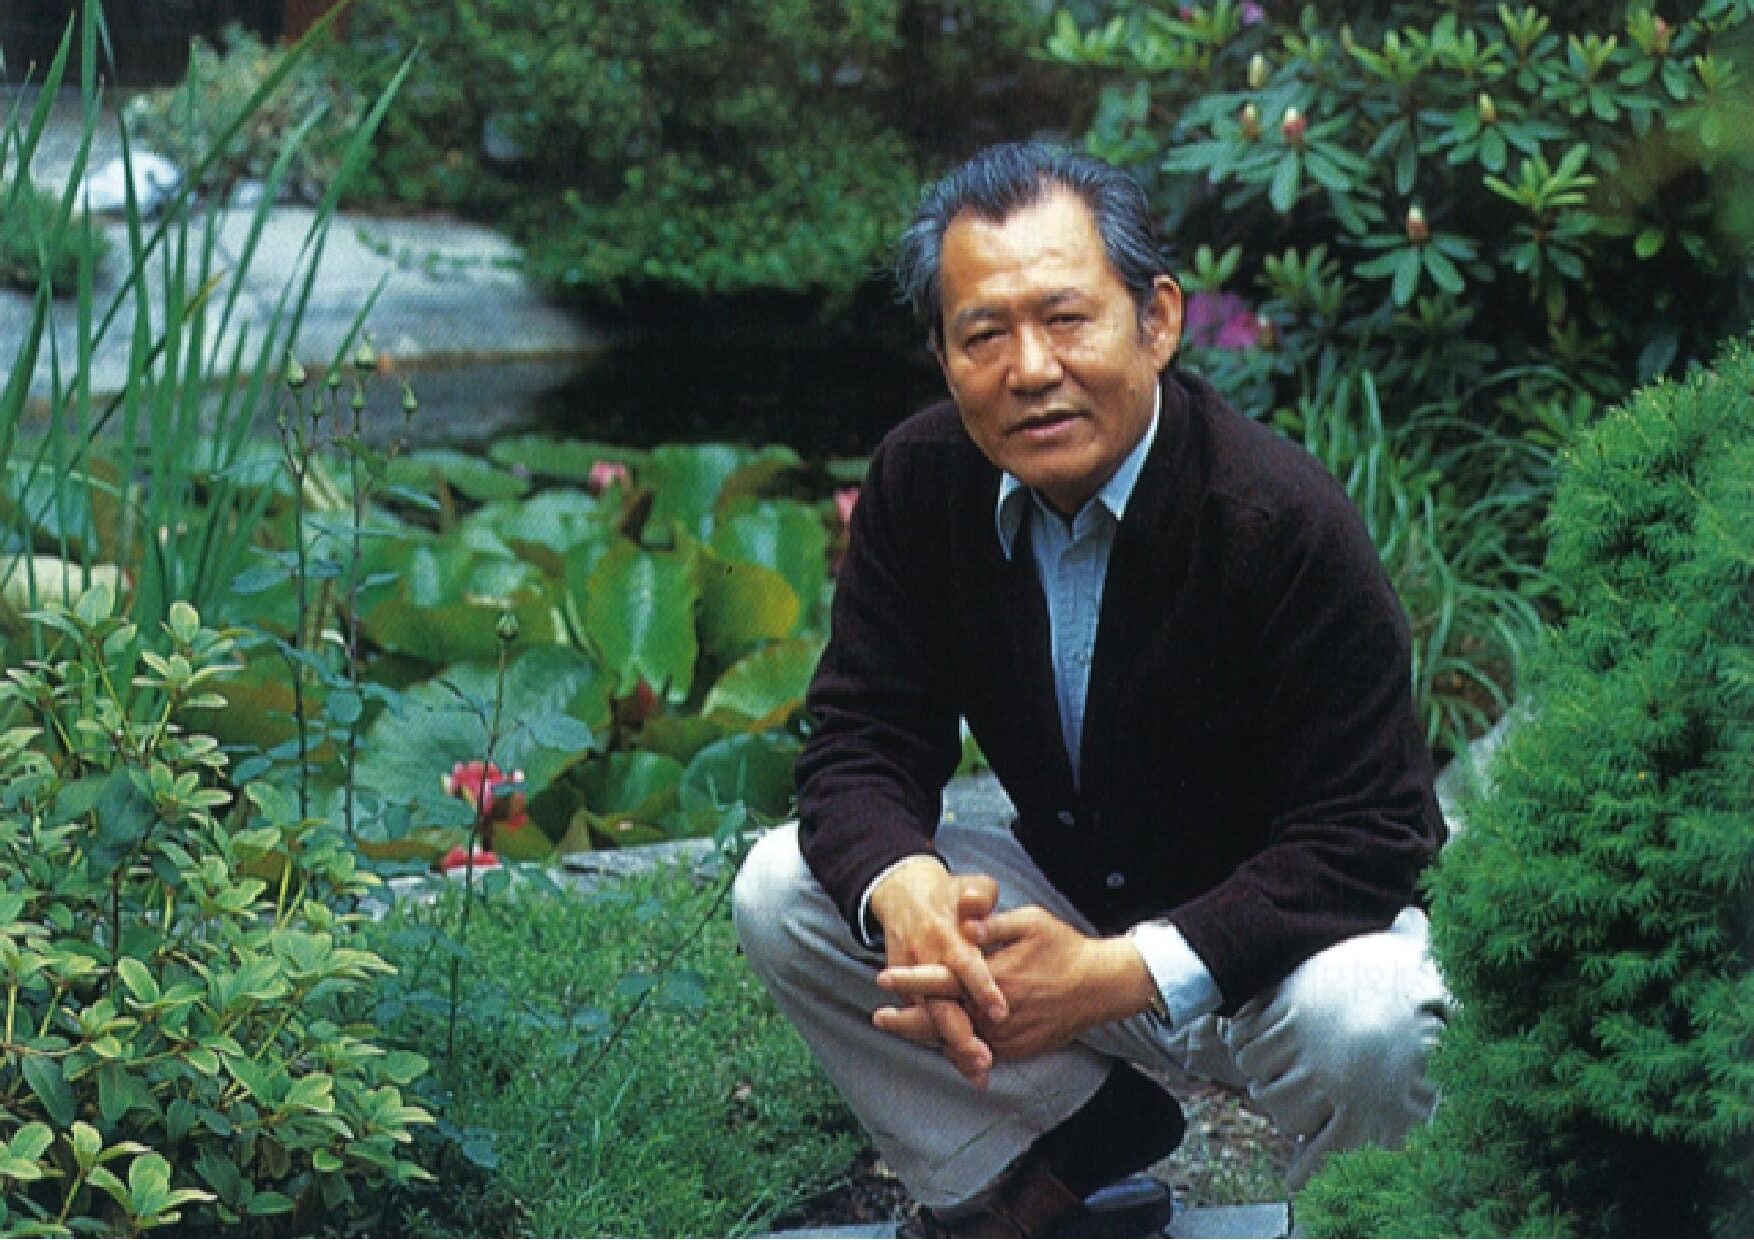 Der Komponist Isang Yun – sein Weg, seine Musik / Yun-Abend im Haus Kladower Forum